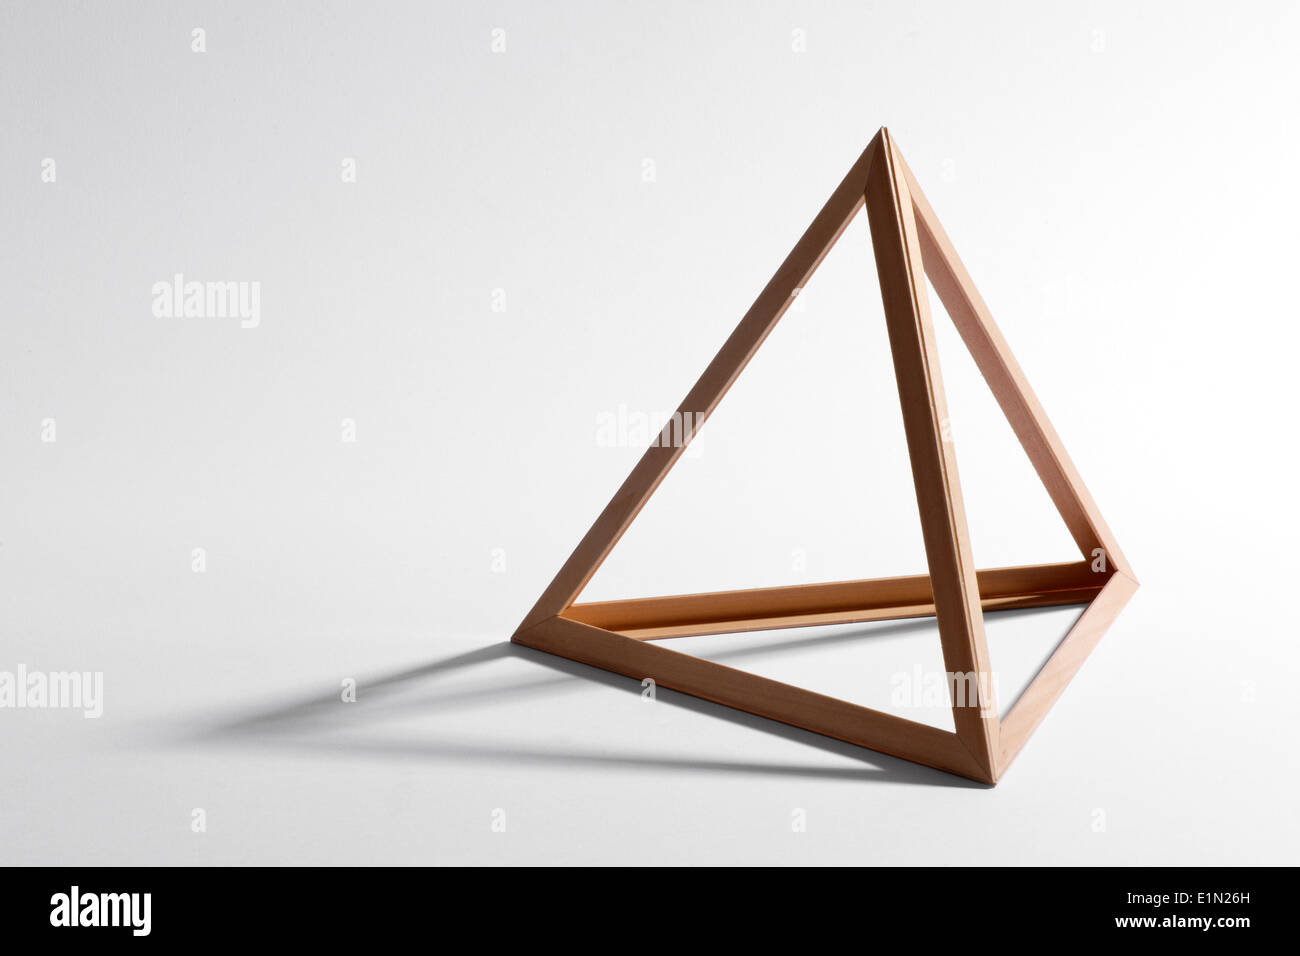 Ouvrez empty wooden cadre triangulaire ou pyramide Banque D'Images